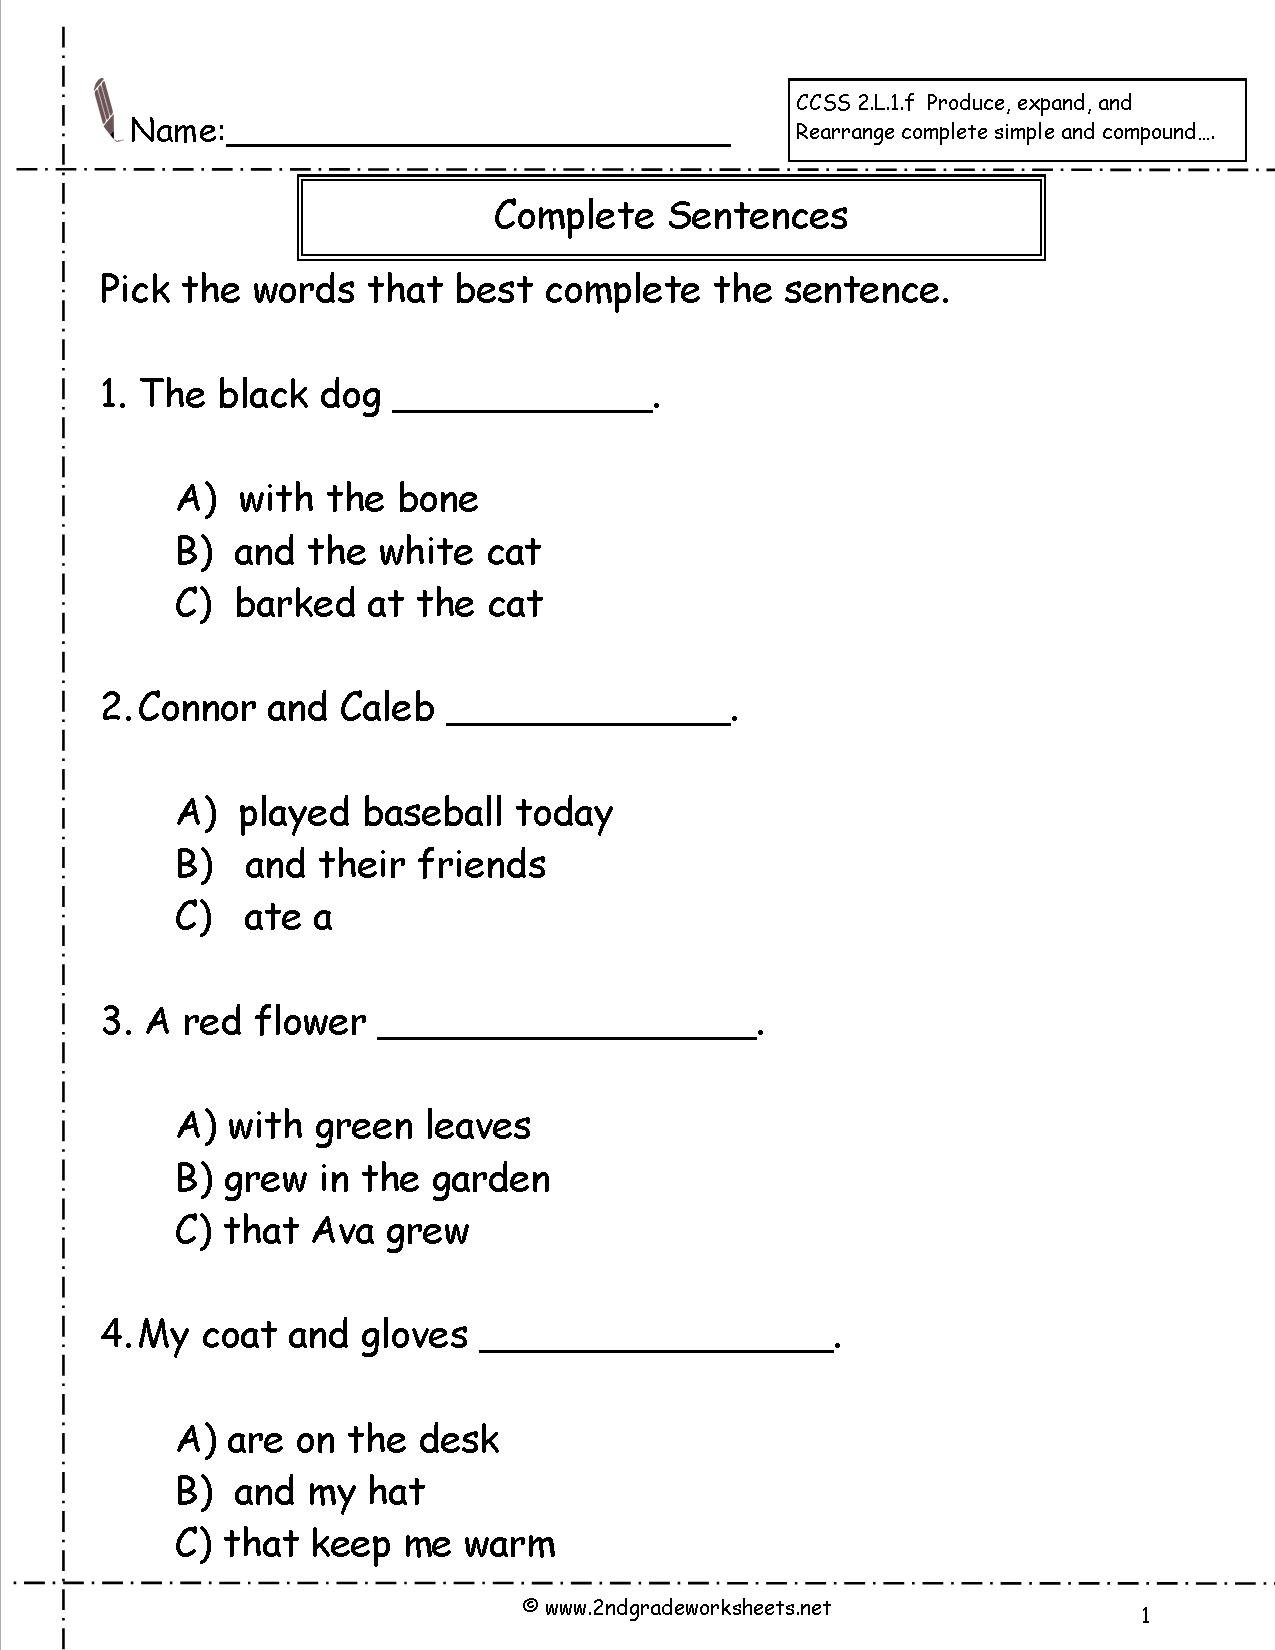 Second Grade Sentences Worksheets Ccss 2L1F Worksheets For Writing Sentences Worksheets For 1St Grade